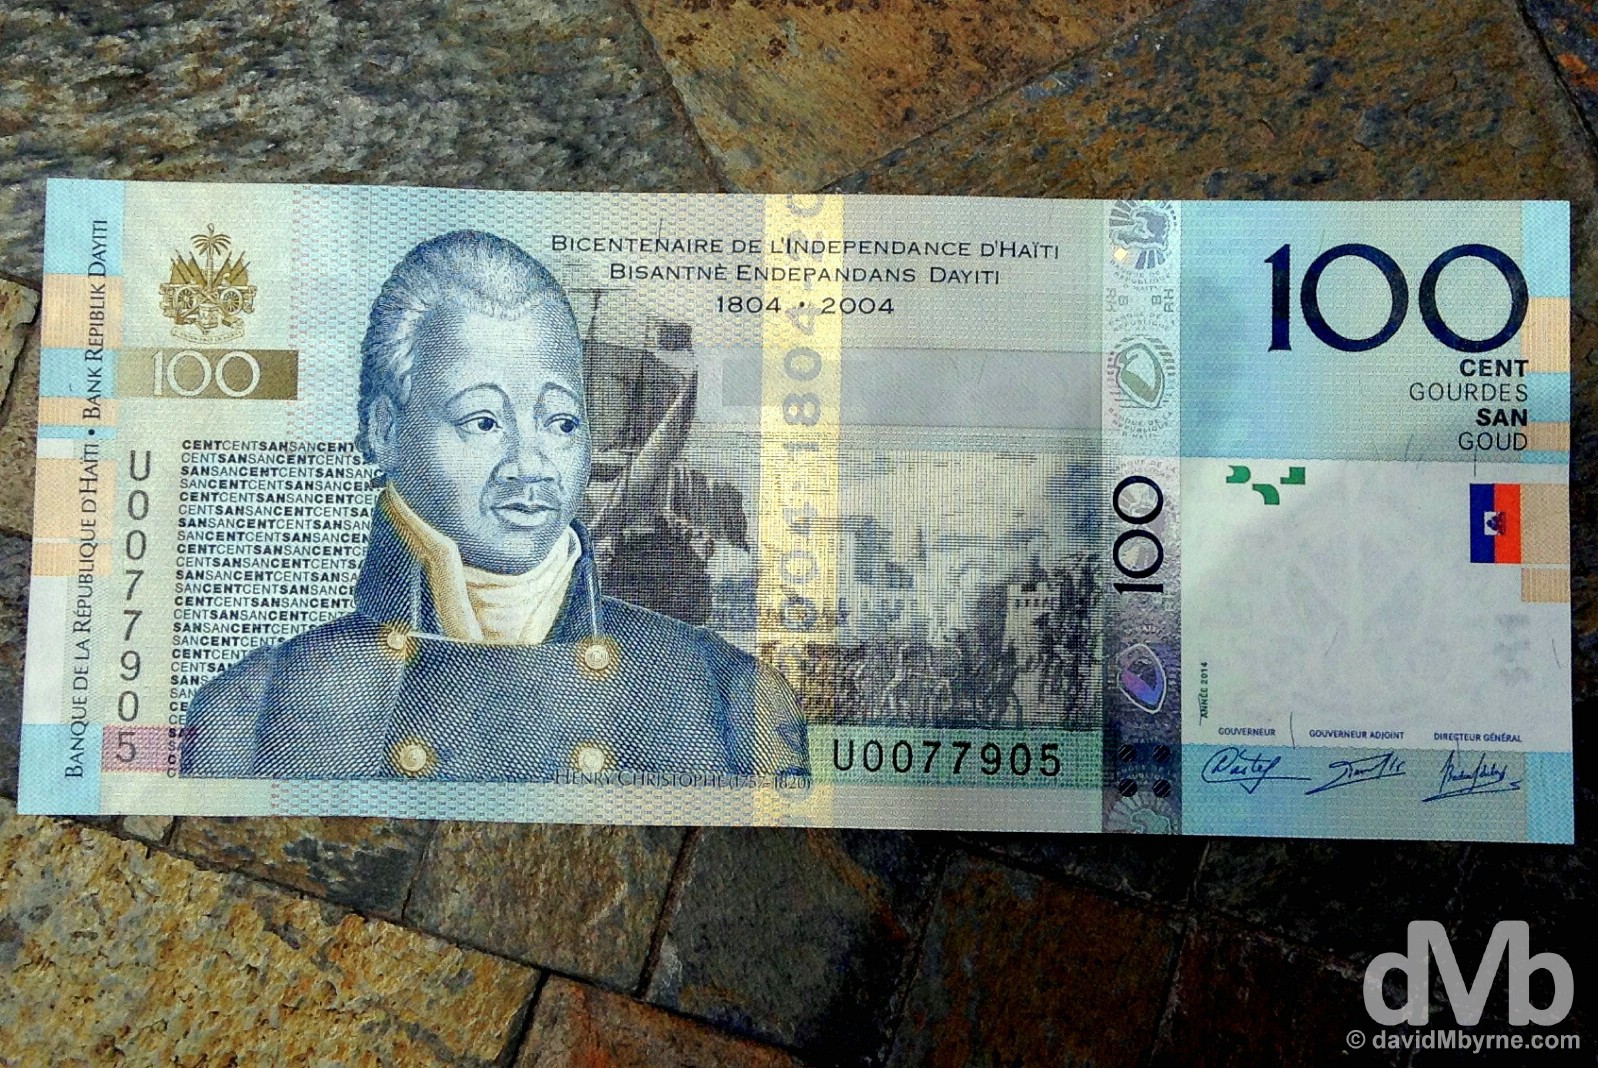 100 Goud (€1.40). Port-Au-Prince, Haiti. May 16, 2015. 